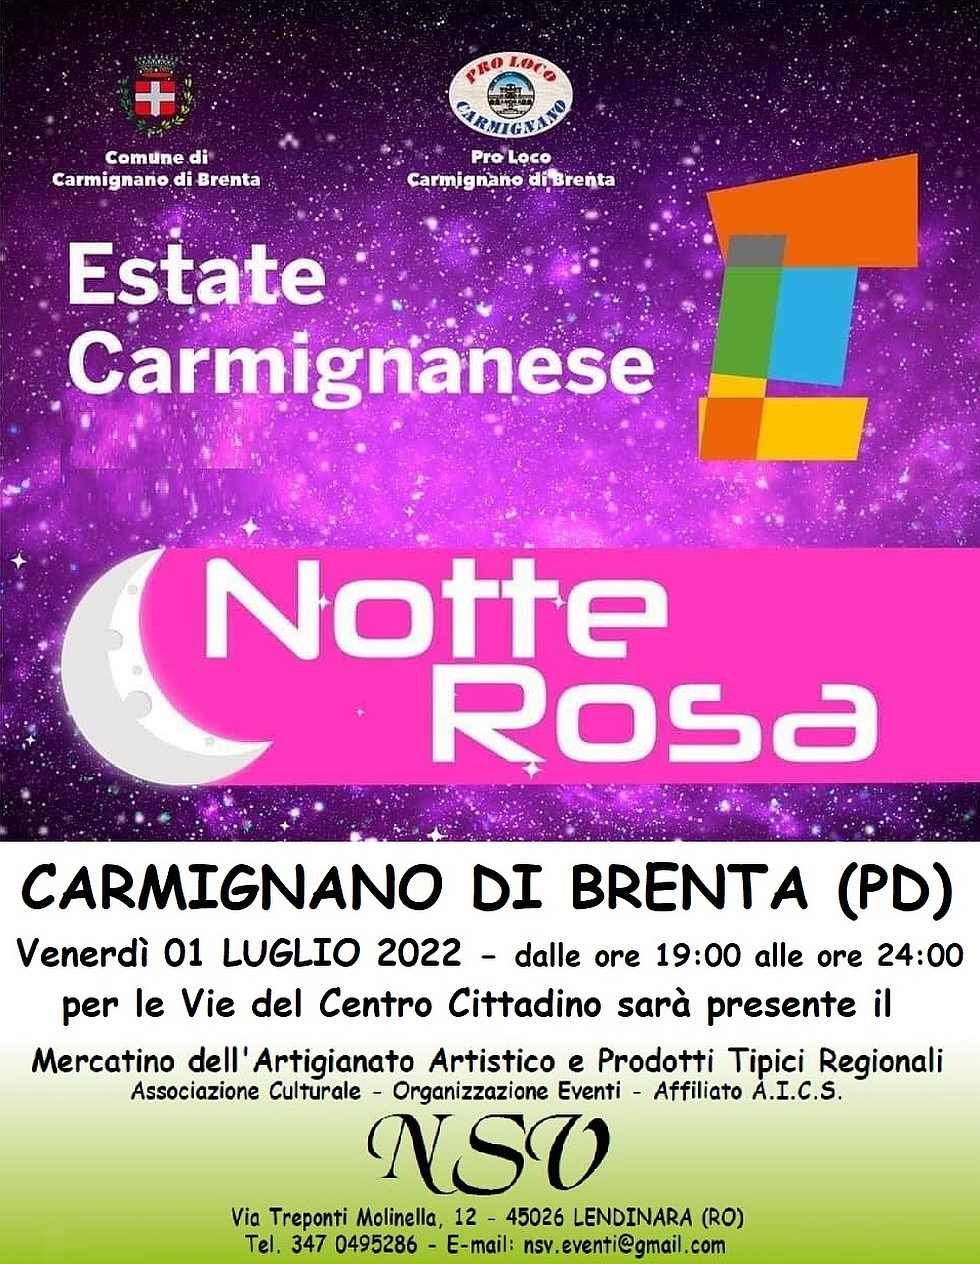 Carmignano di Brenta (PD)
"Notte Rosa e Mercatino"
1° Luglio 2022 